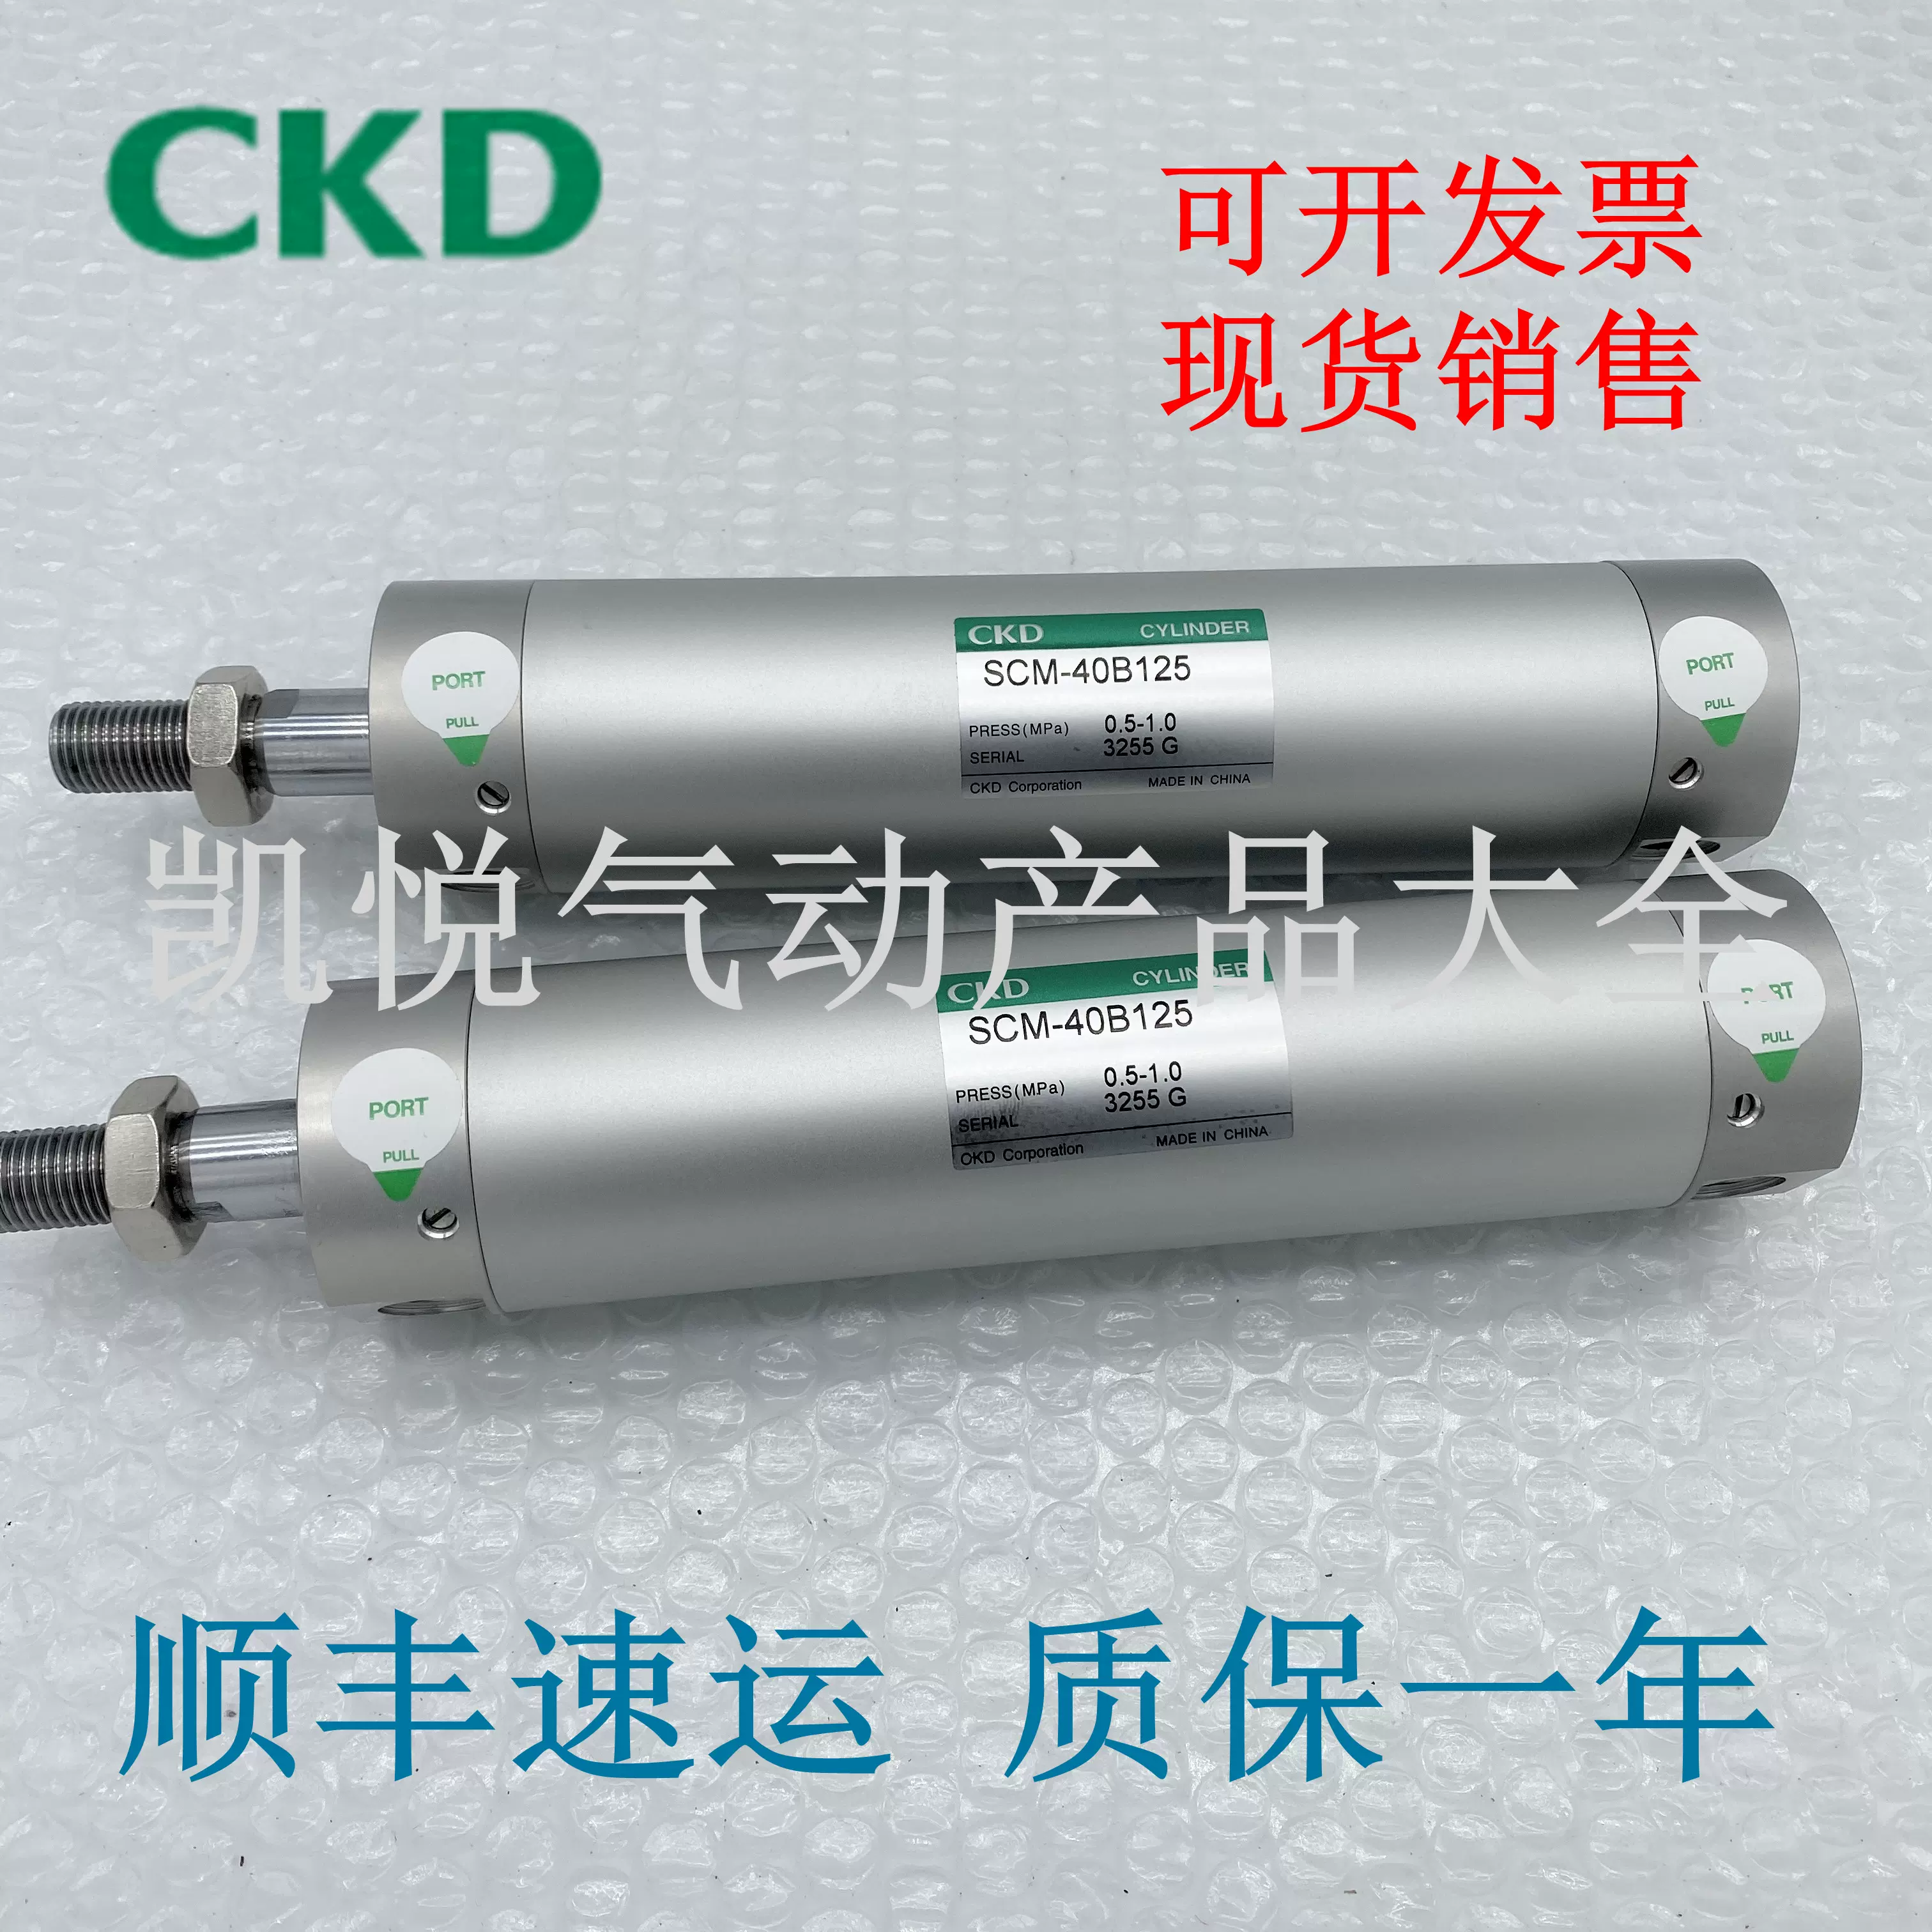 CKD CKD セルバックス真空エジェクタ16mm幅 VSKM-H05F-T6-PW-www